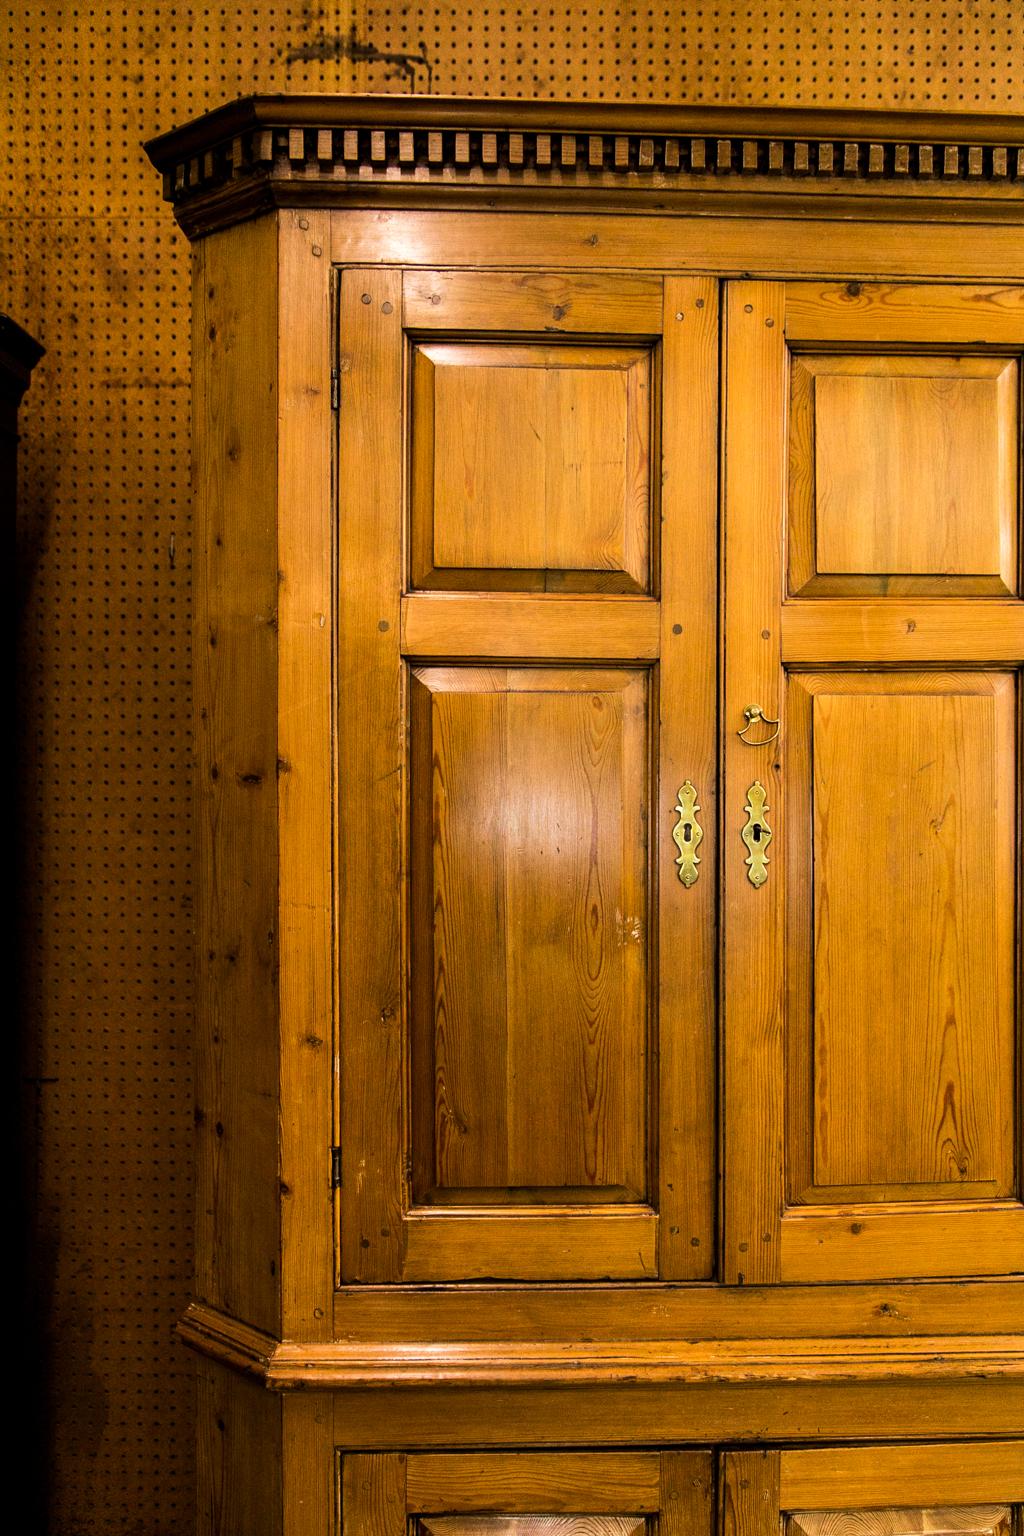 L'armoire d'angle en pin anglais a une construction à chevilles doubles apparentes avec des panneaux moulurés en relief dans la porte, et la corniche à denticules profonds a des moulures en ogee. Le plateau intérieur est faussement peint avec un